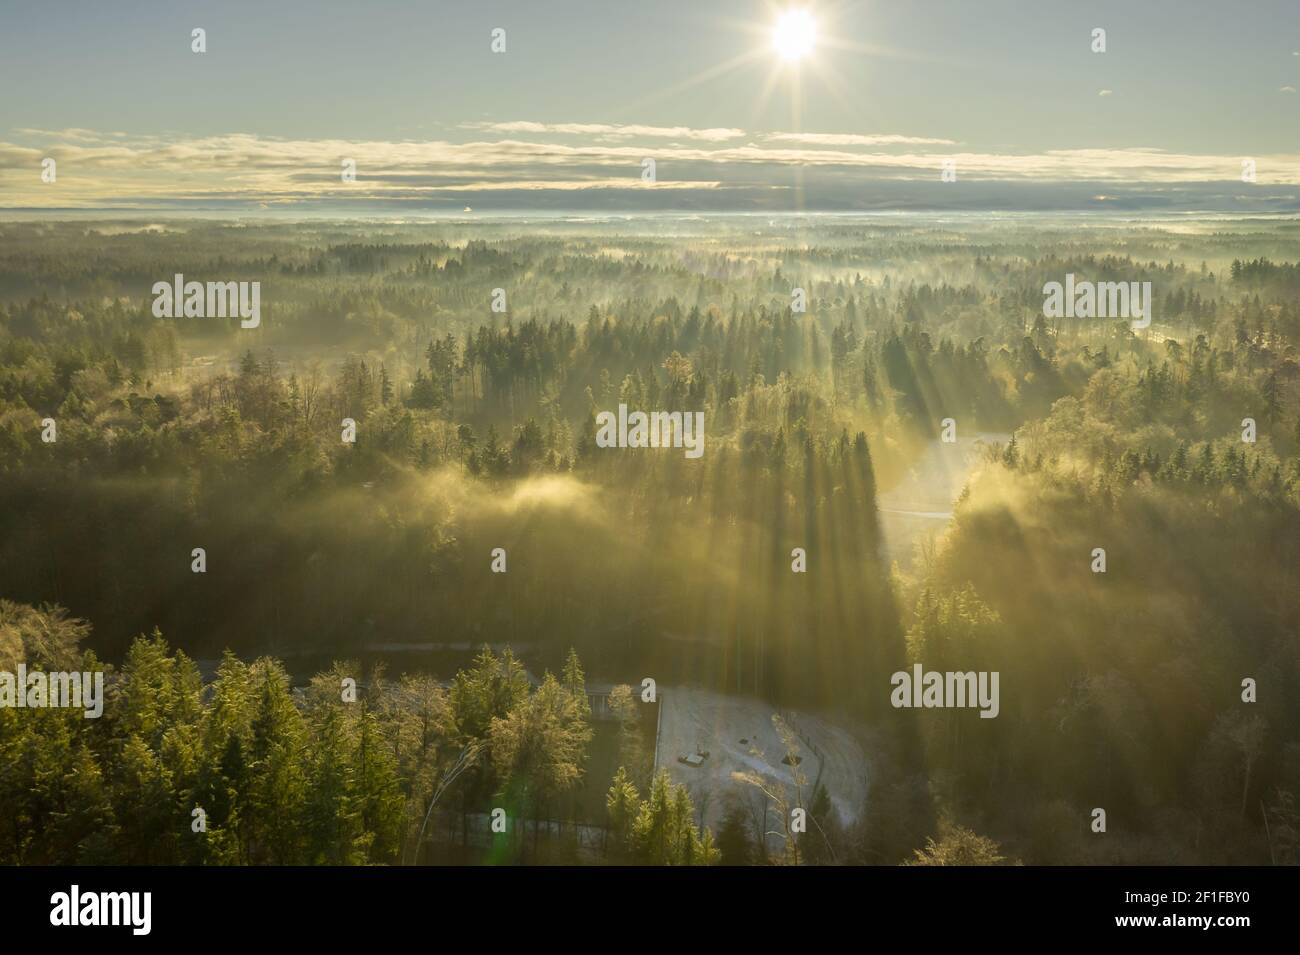 Meravigliosa mattina nebbia con vista aerea su una foresta nebbiosa durante la stagione invernale, mentre il sole sta riscaldando le cime degli alberi. Foto Stock